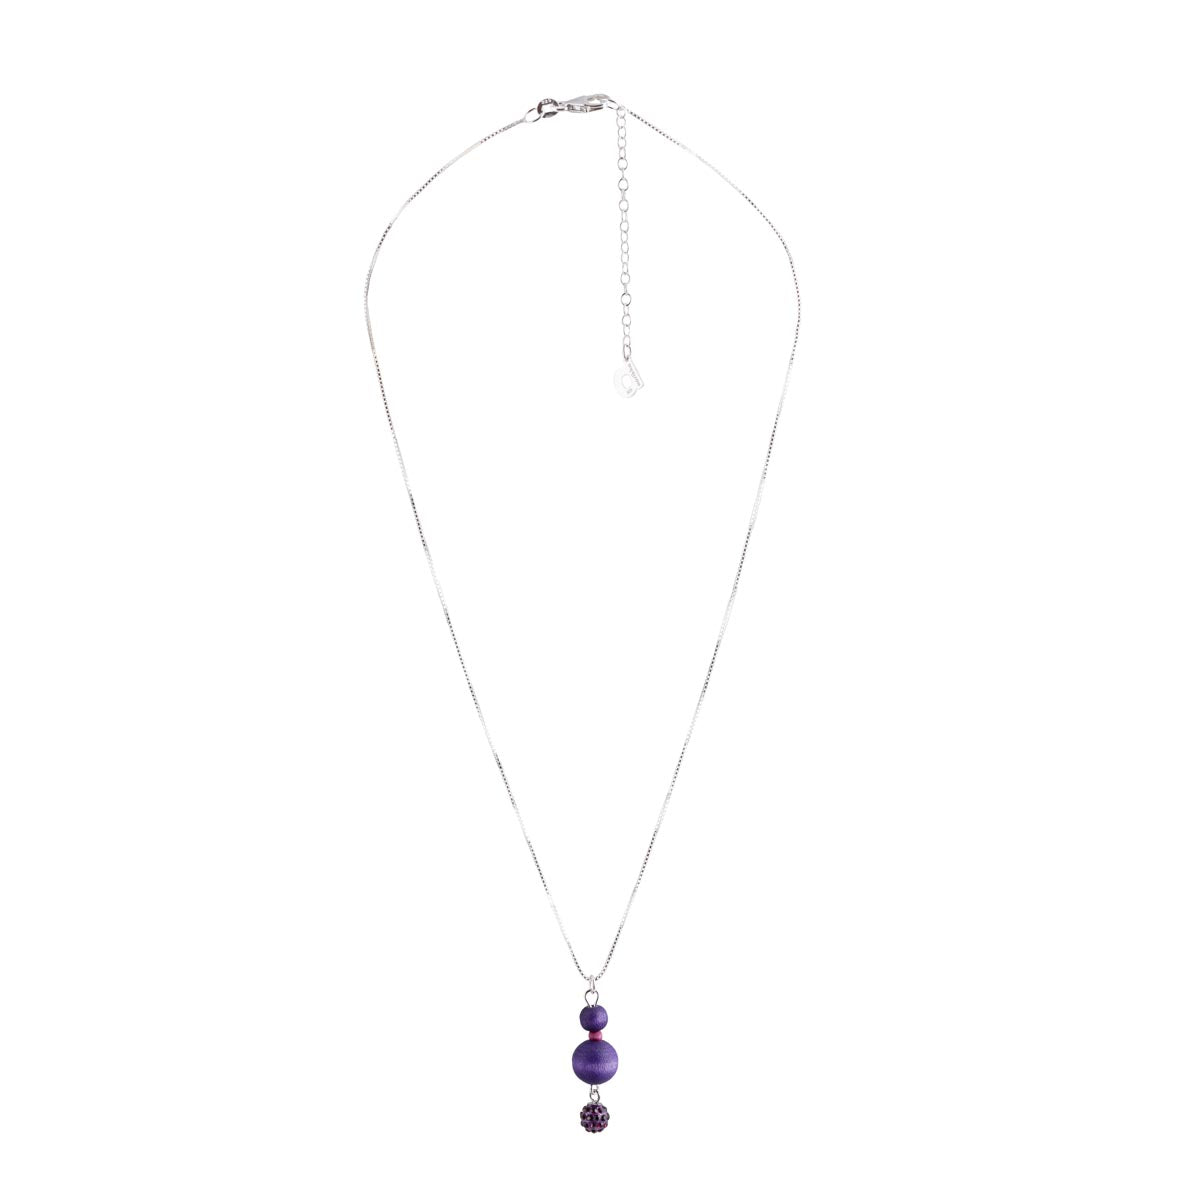 Tuike pendant, purple